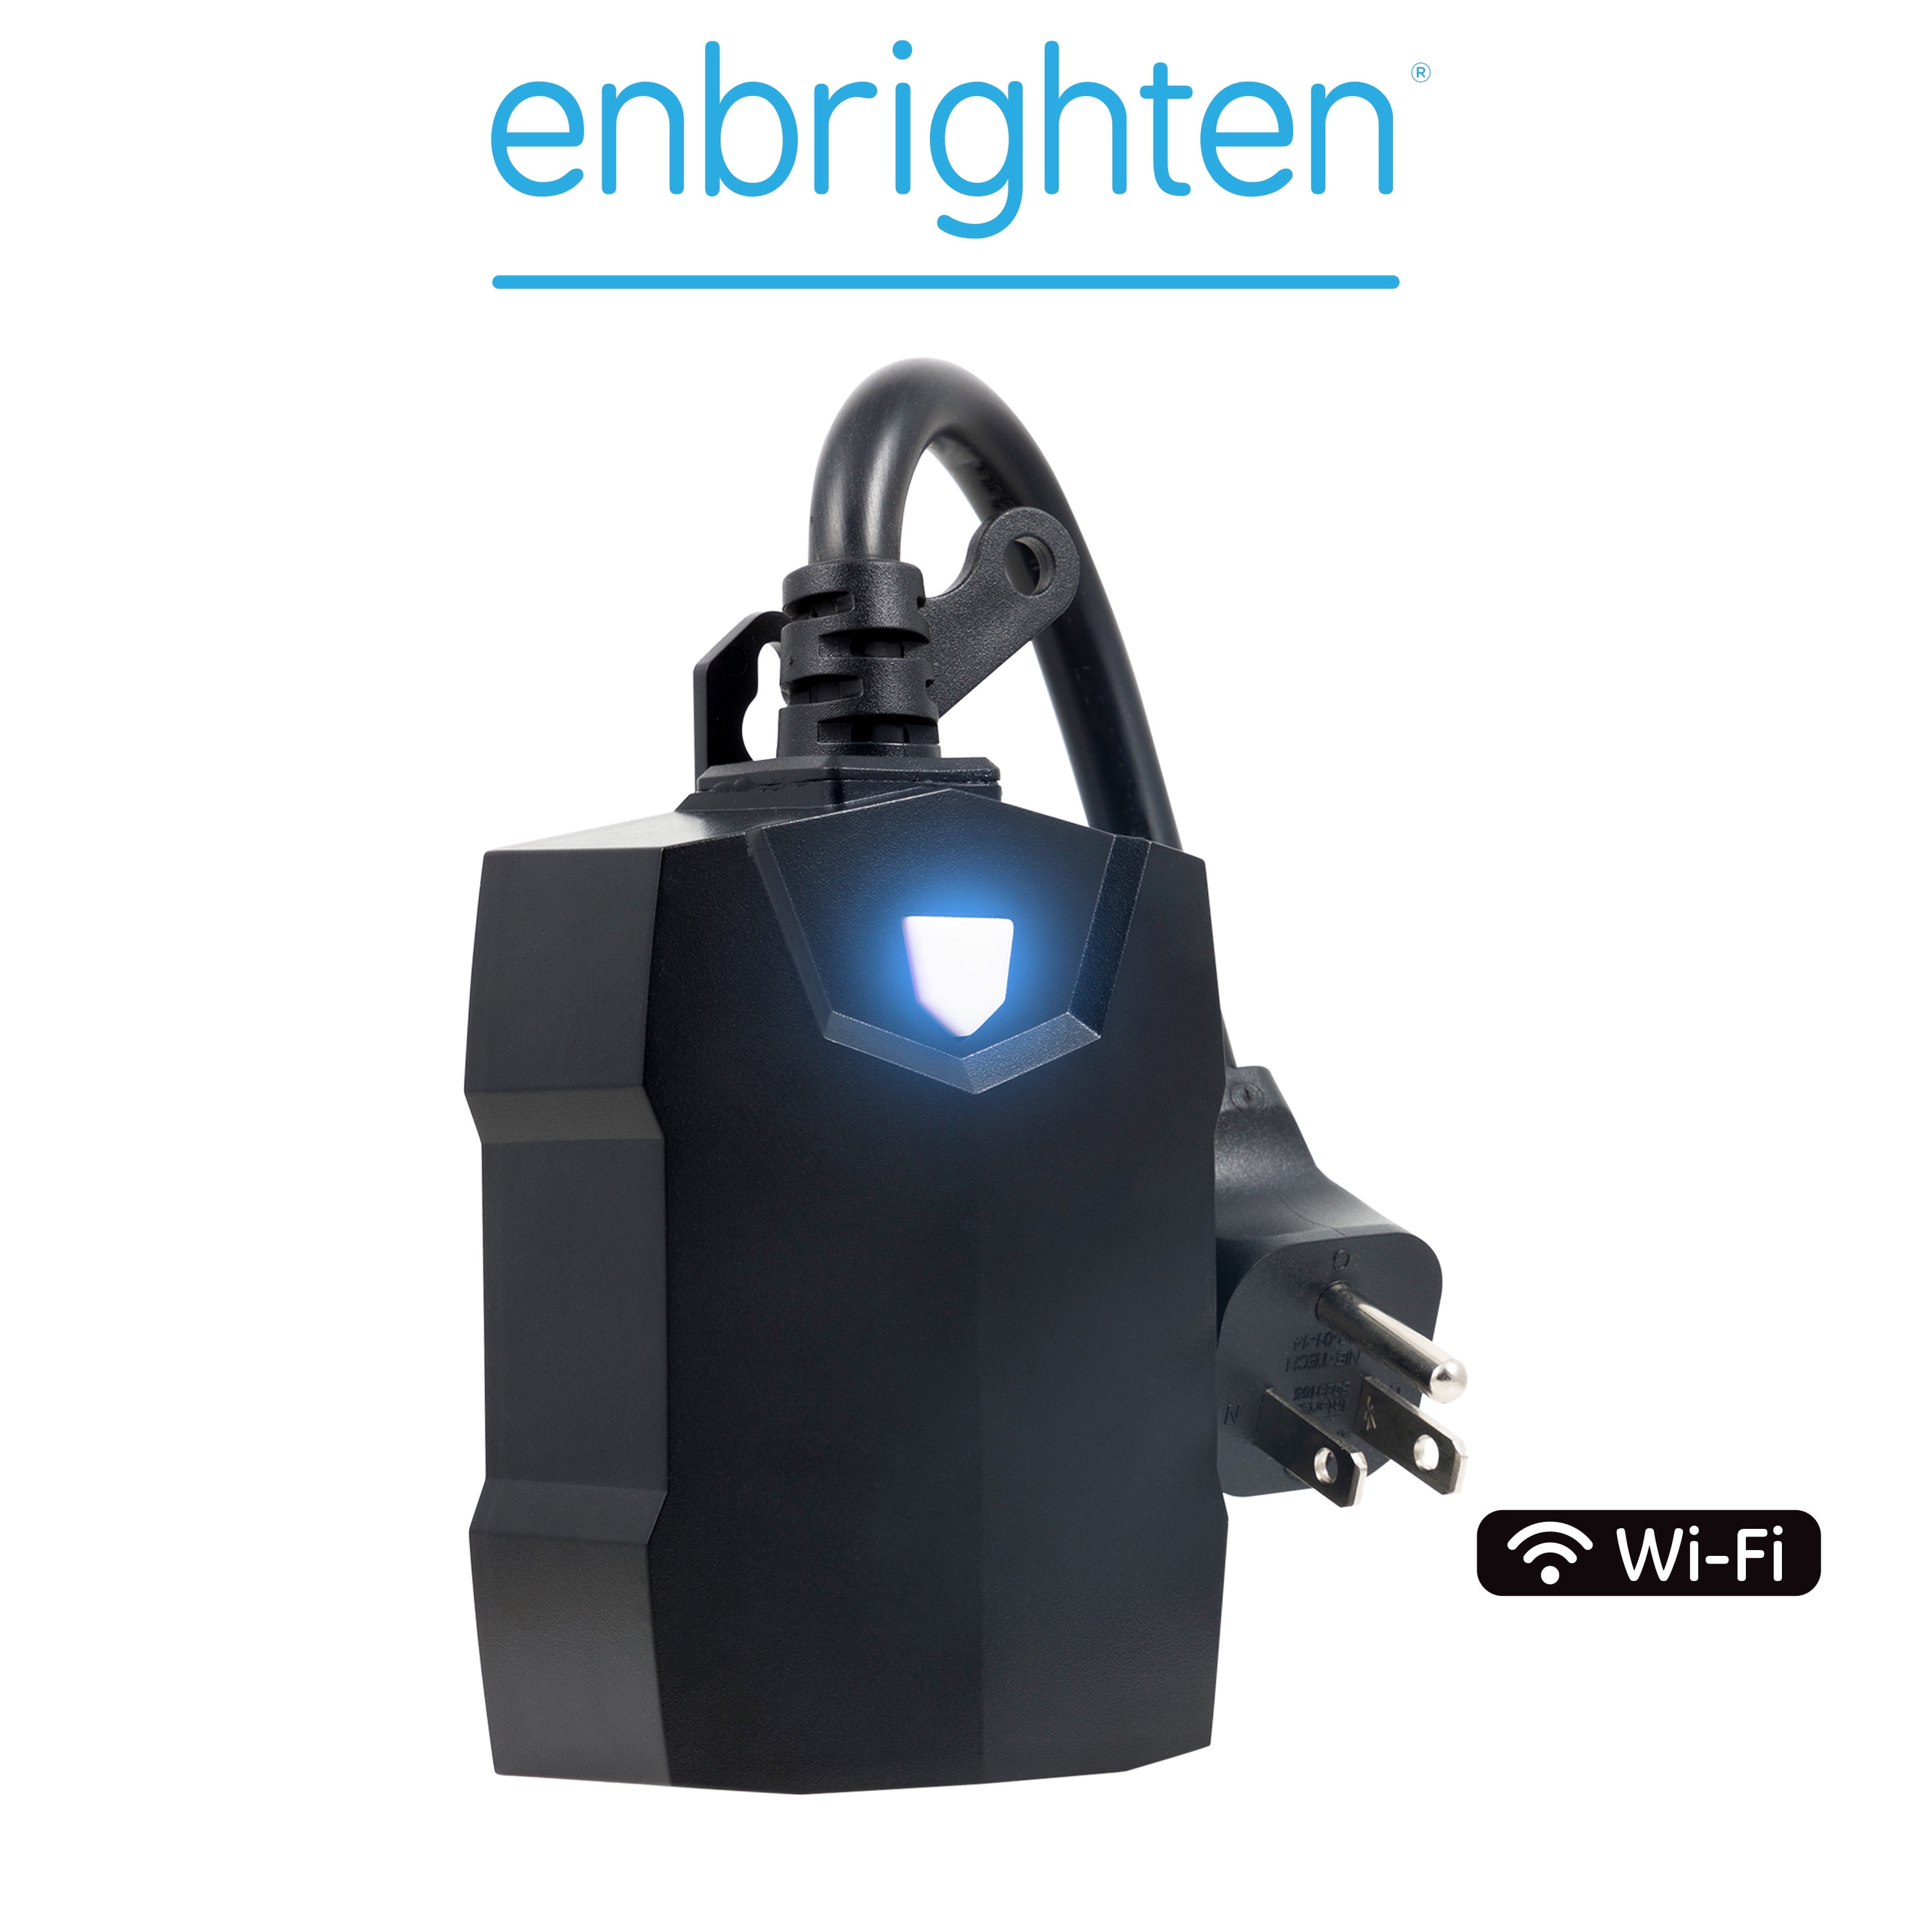 Enbrighten 2-Outlet Outdoor Wi-Fi Smart Plug, Black, 71018